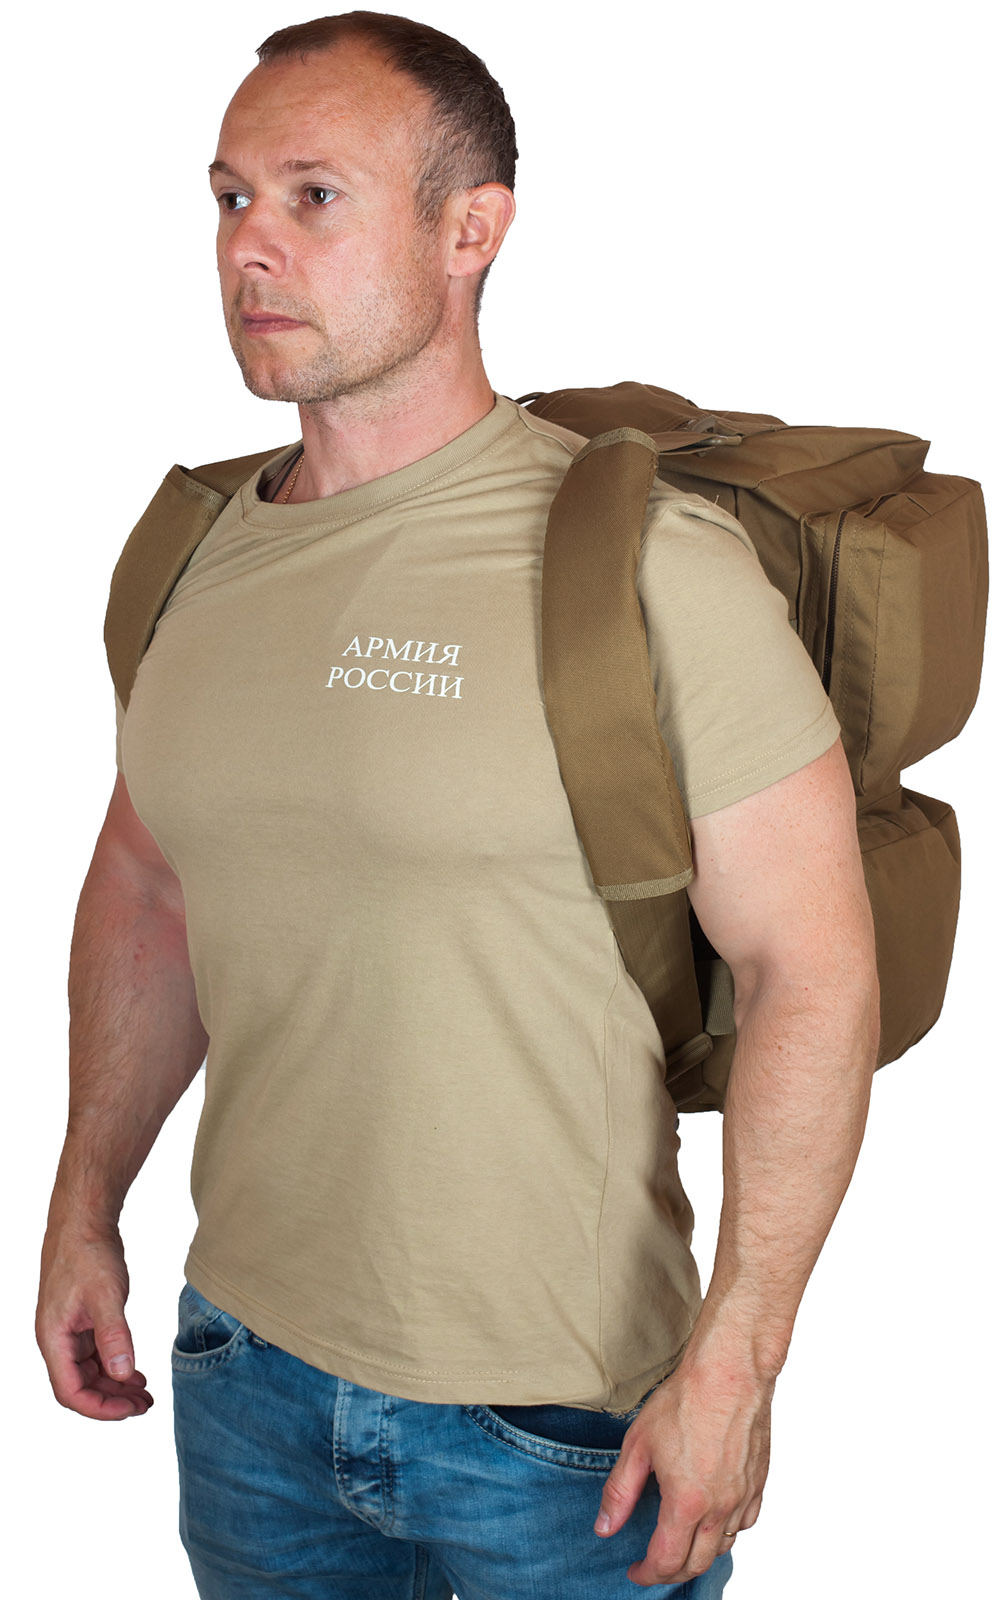 Купить дорожную мужскую сумку-рюкзак с нашивкой Русская Охота с доставкой в ваш город